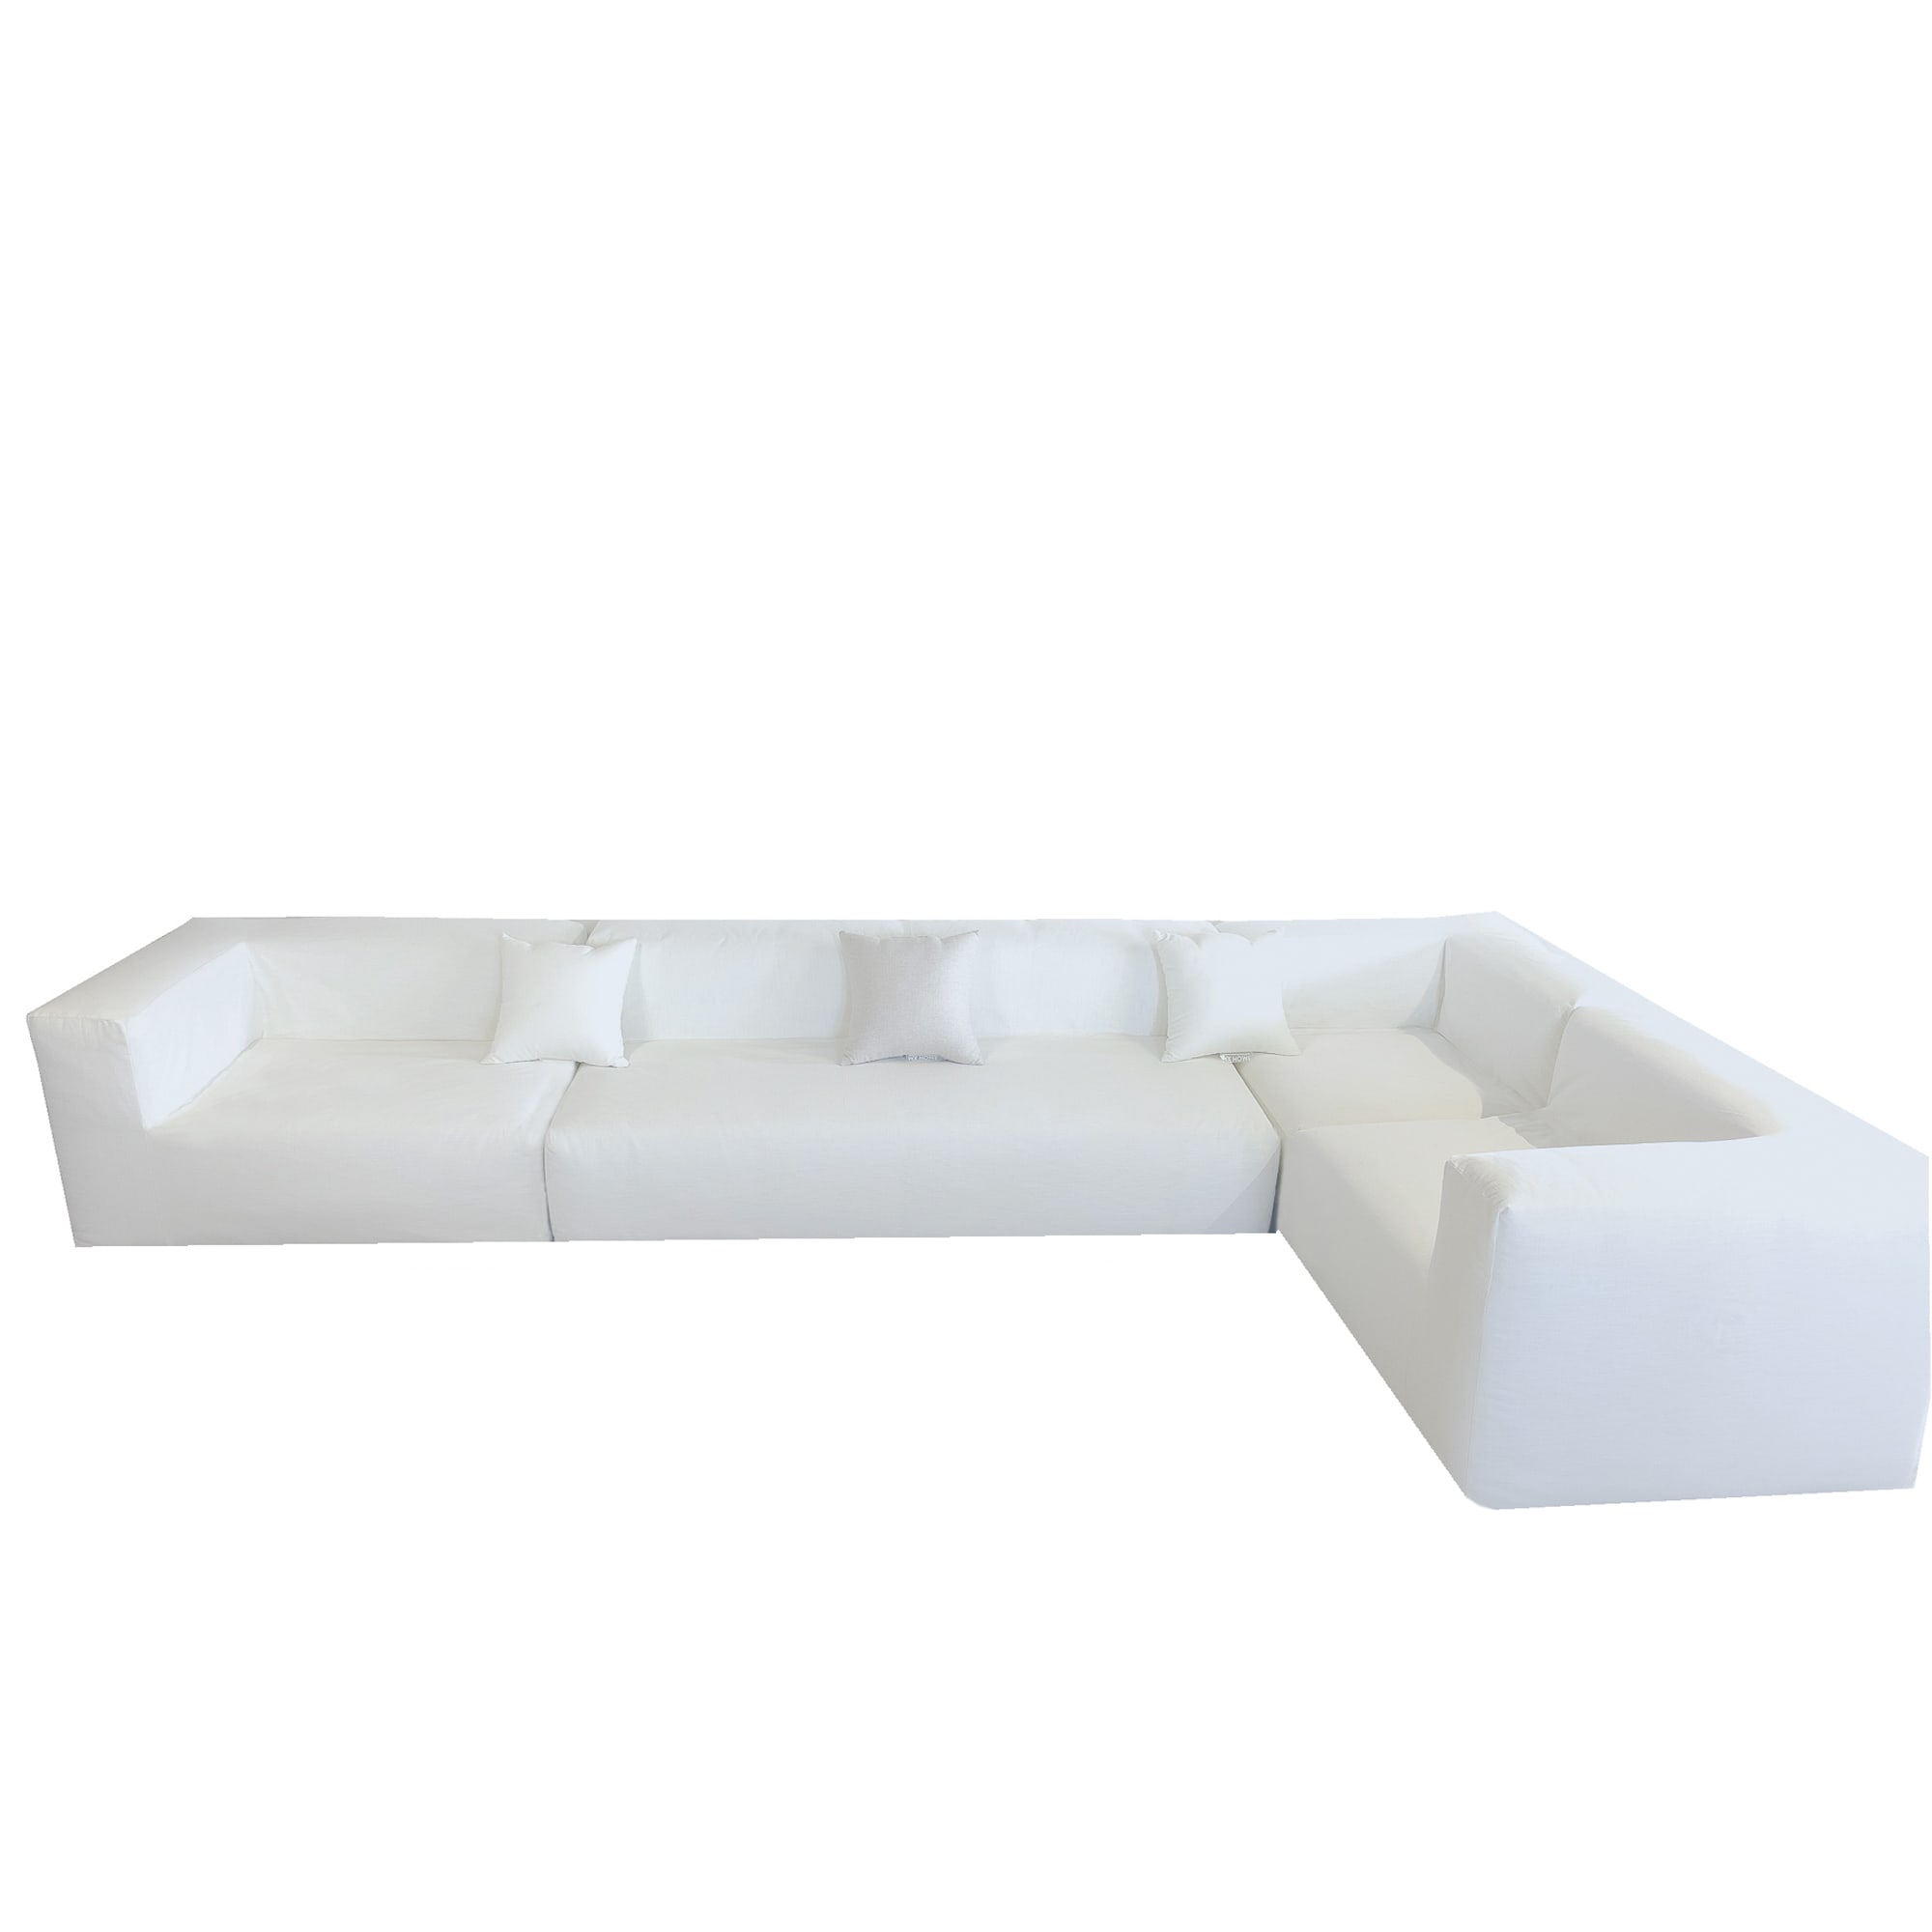 Copridivano bianco cotone per divano - A 5/6 posti